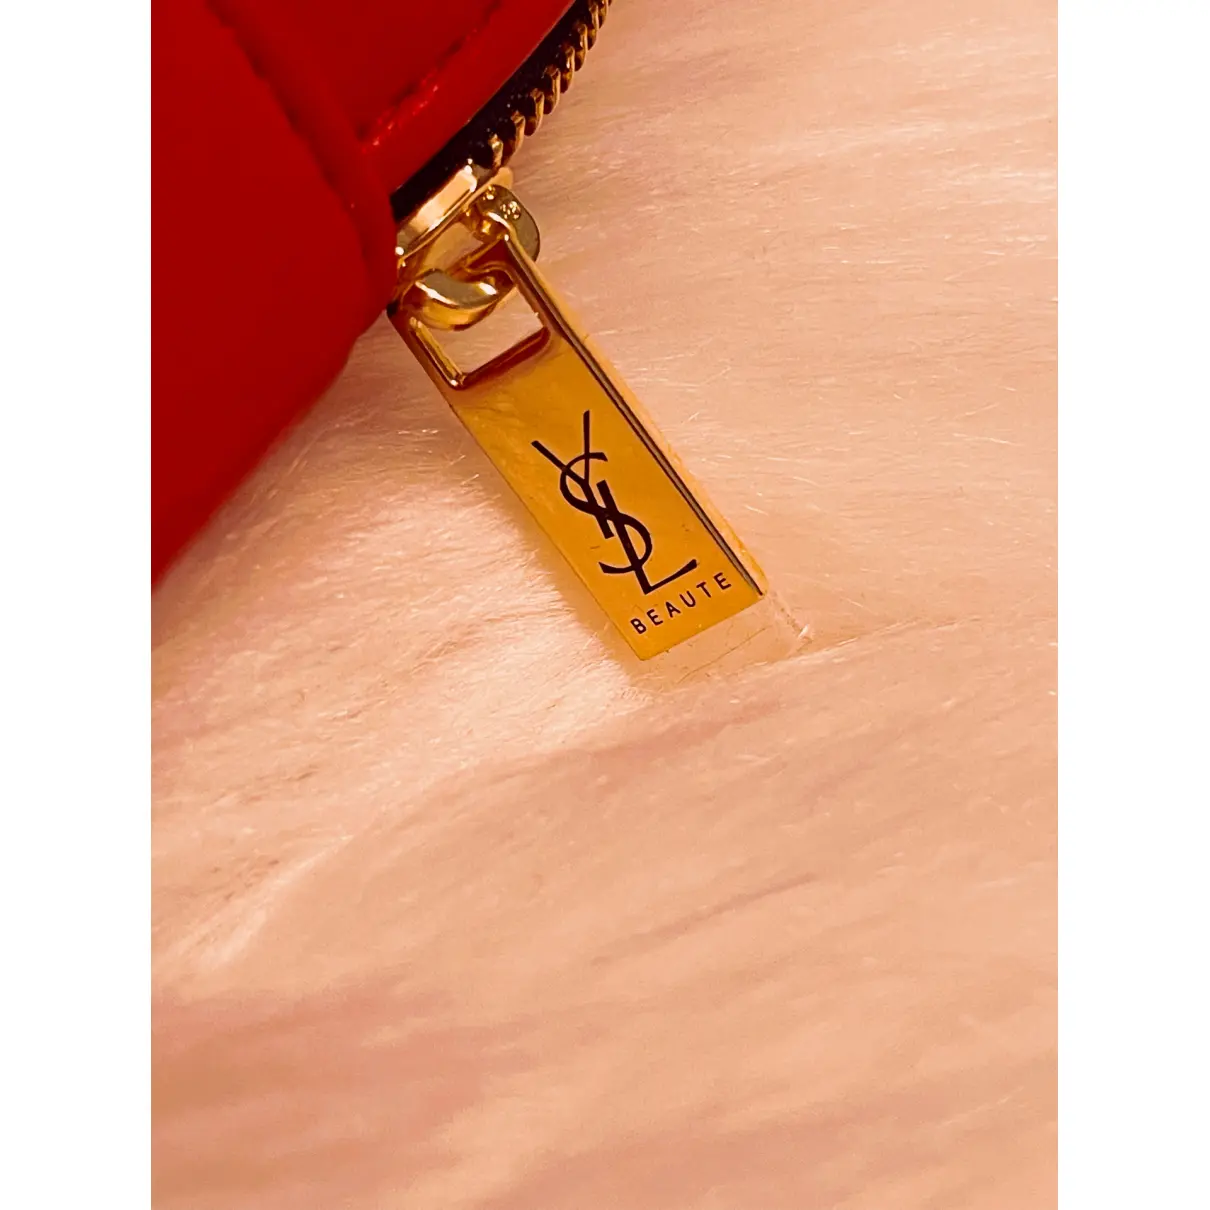 Buy Yves Saint Laurent Vegan leather travel bag online